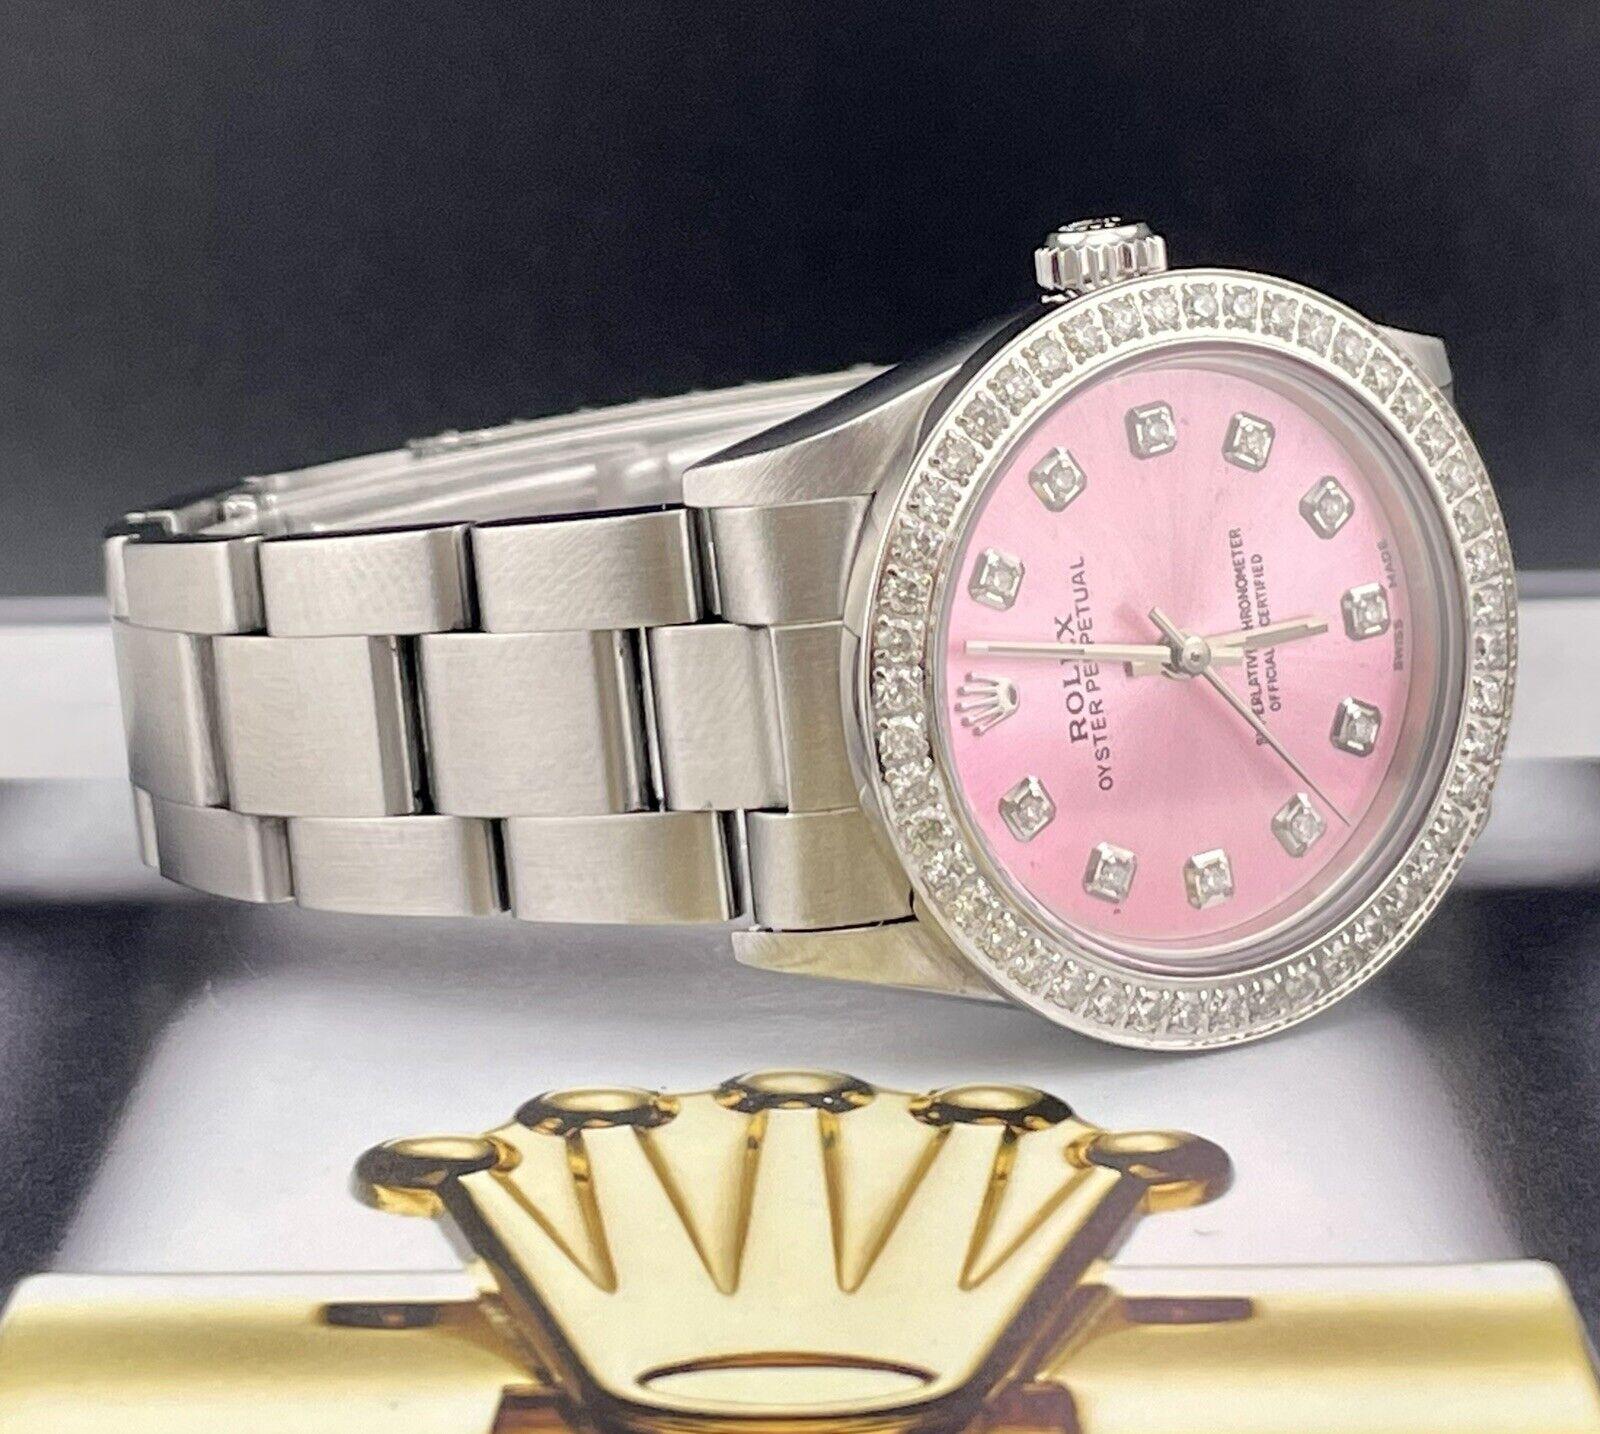 Montre Rolex Oyster Perpetual 31mm. Une montre d'occasion avec boîte cadeau. La montre est 100% authentique et est accompagnée d'une carte d'authenticité. La référence de la montre est 67480 et elle est en excellent état (voir photos). La couleur du